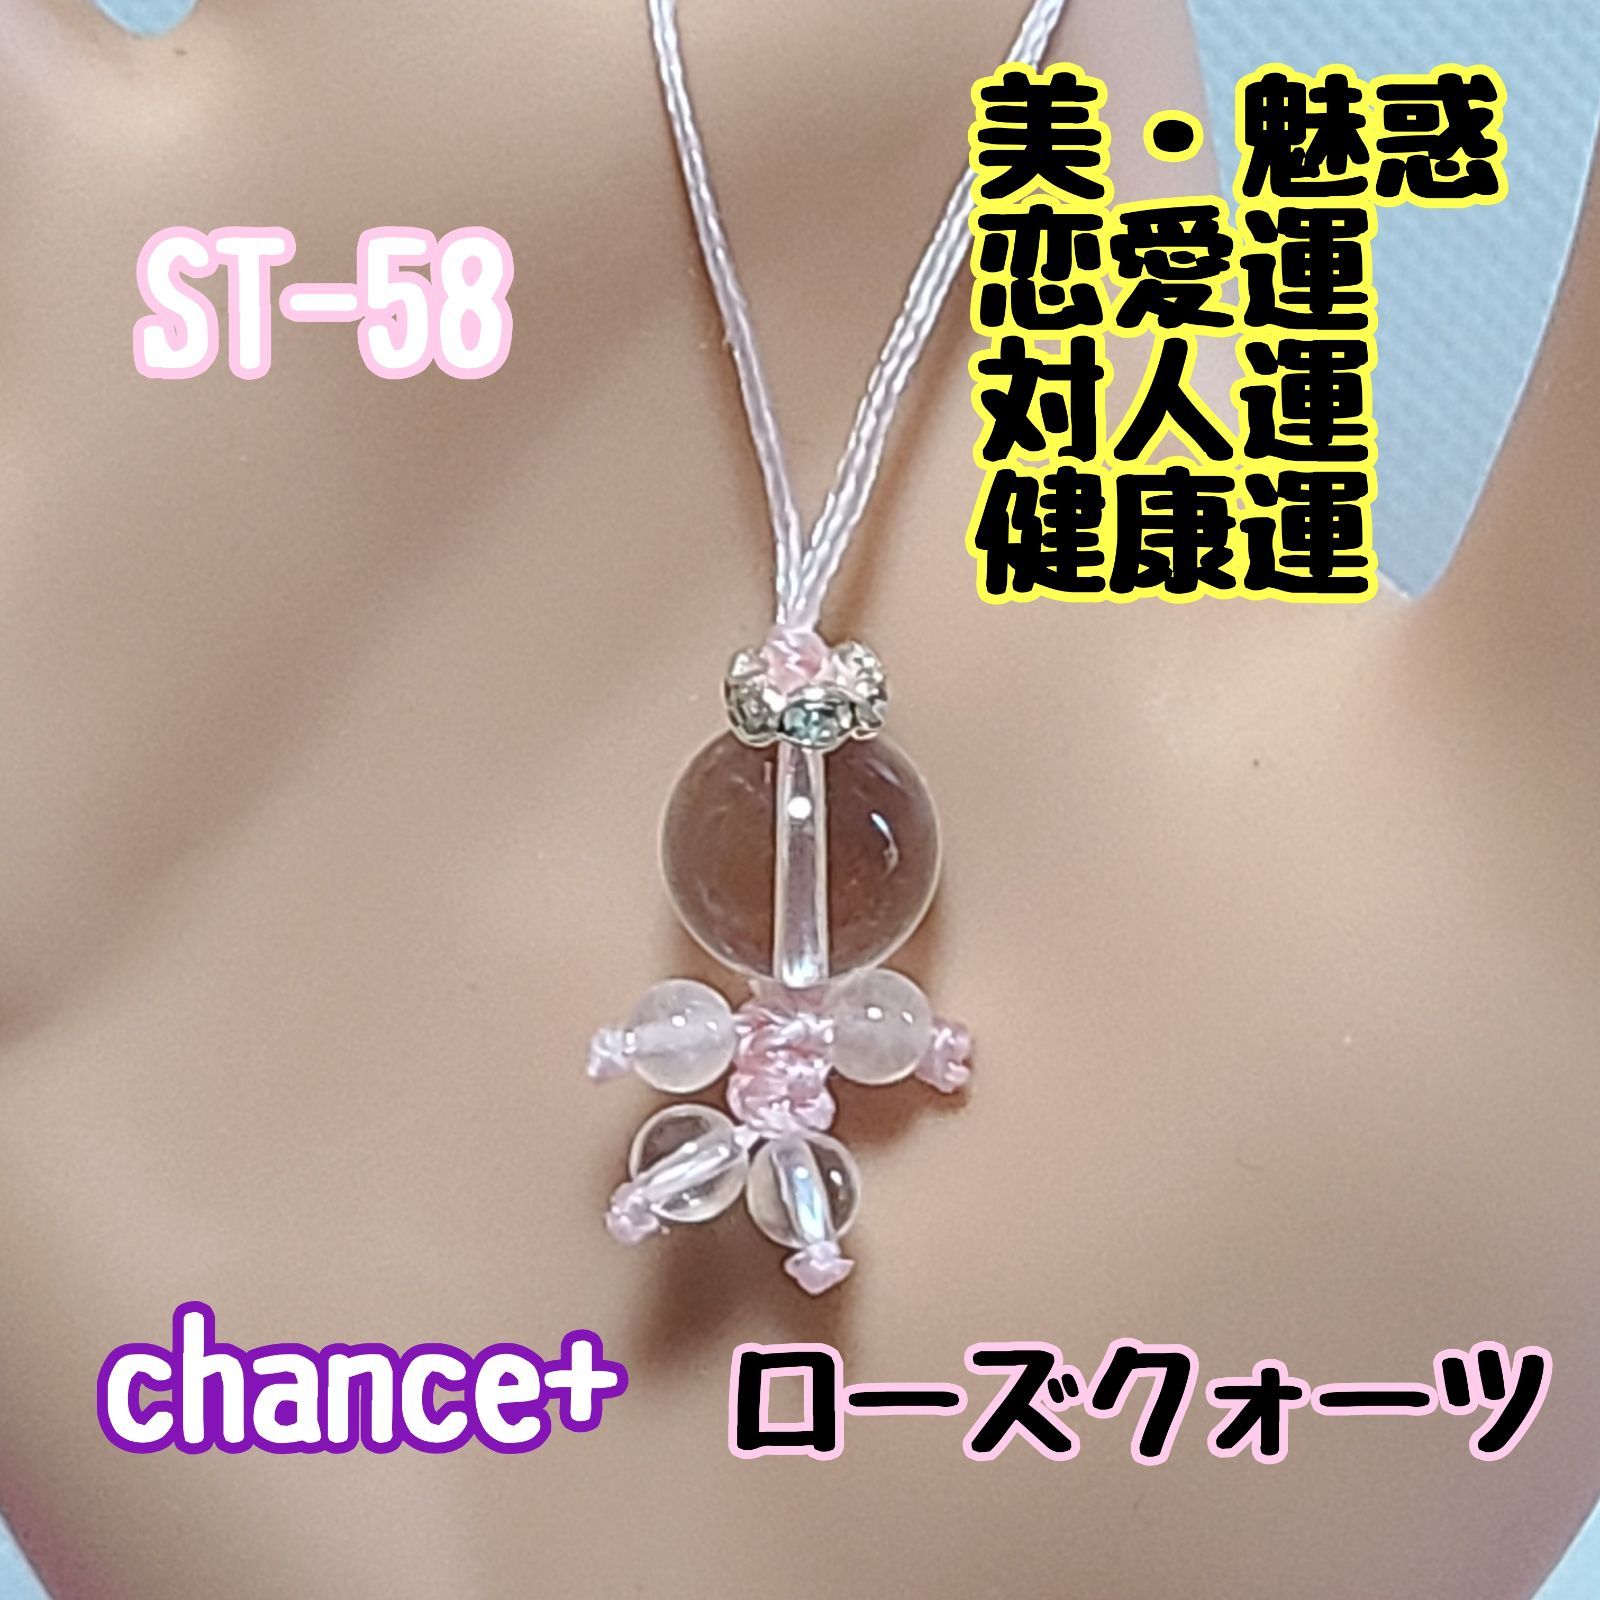 ST-58】身代わり人形ストラップ - 天然石アクセサリー chance+ - メルカリ